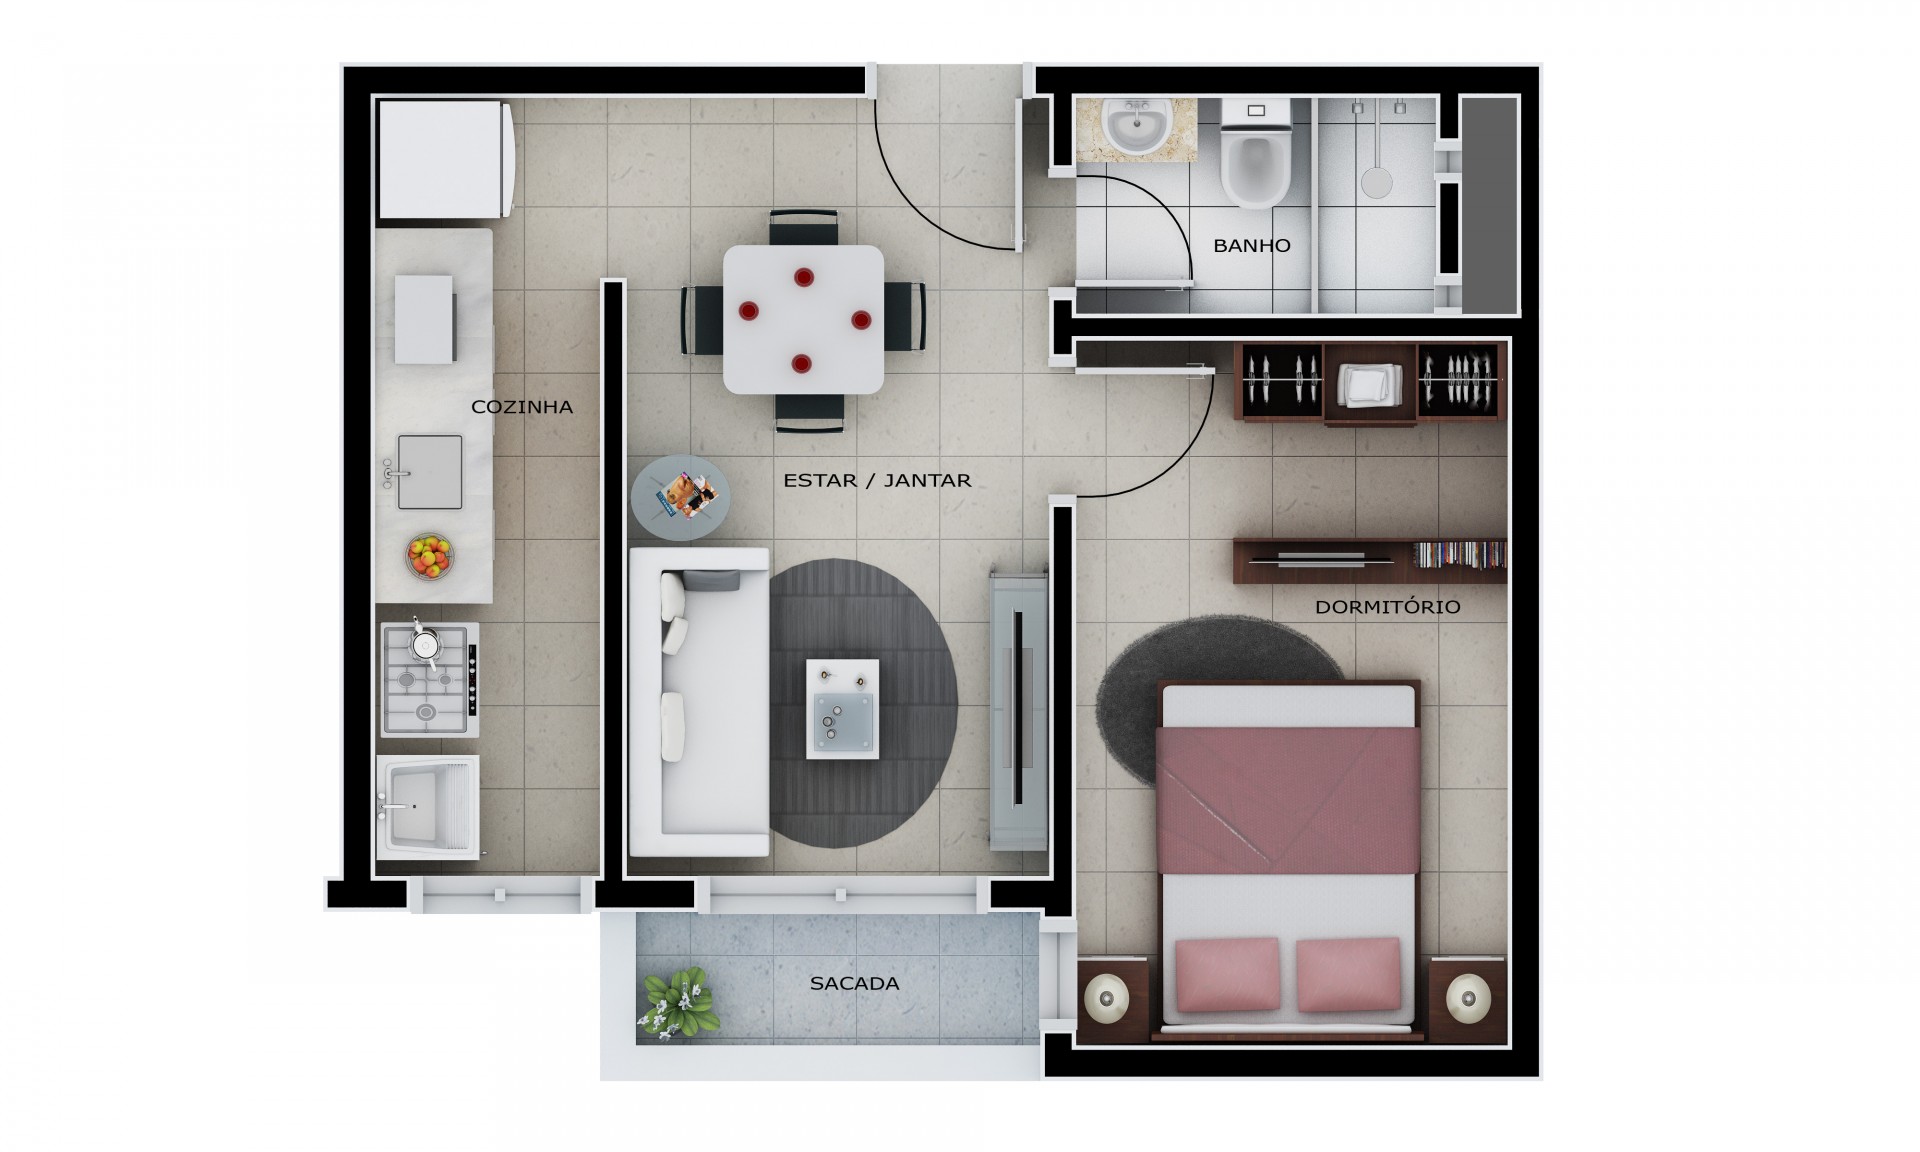 Apartamento com 1 dormitório - Lateral